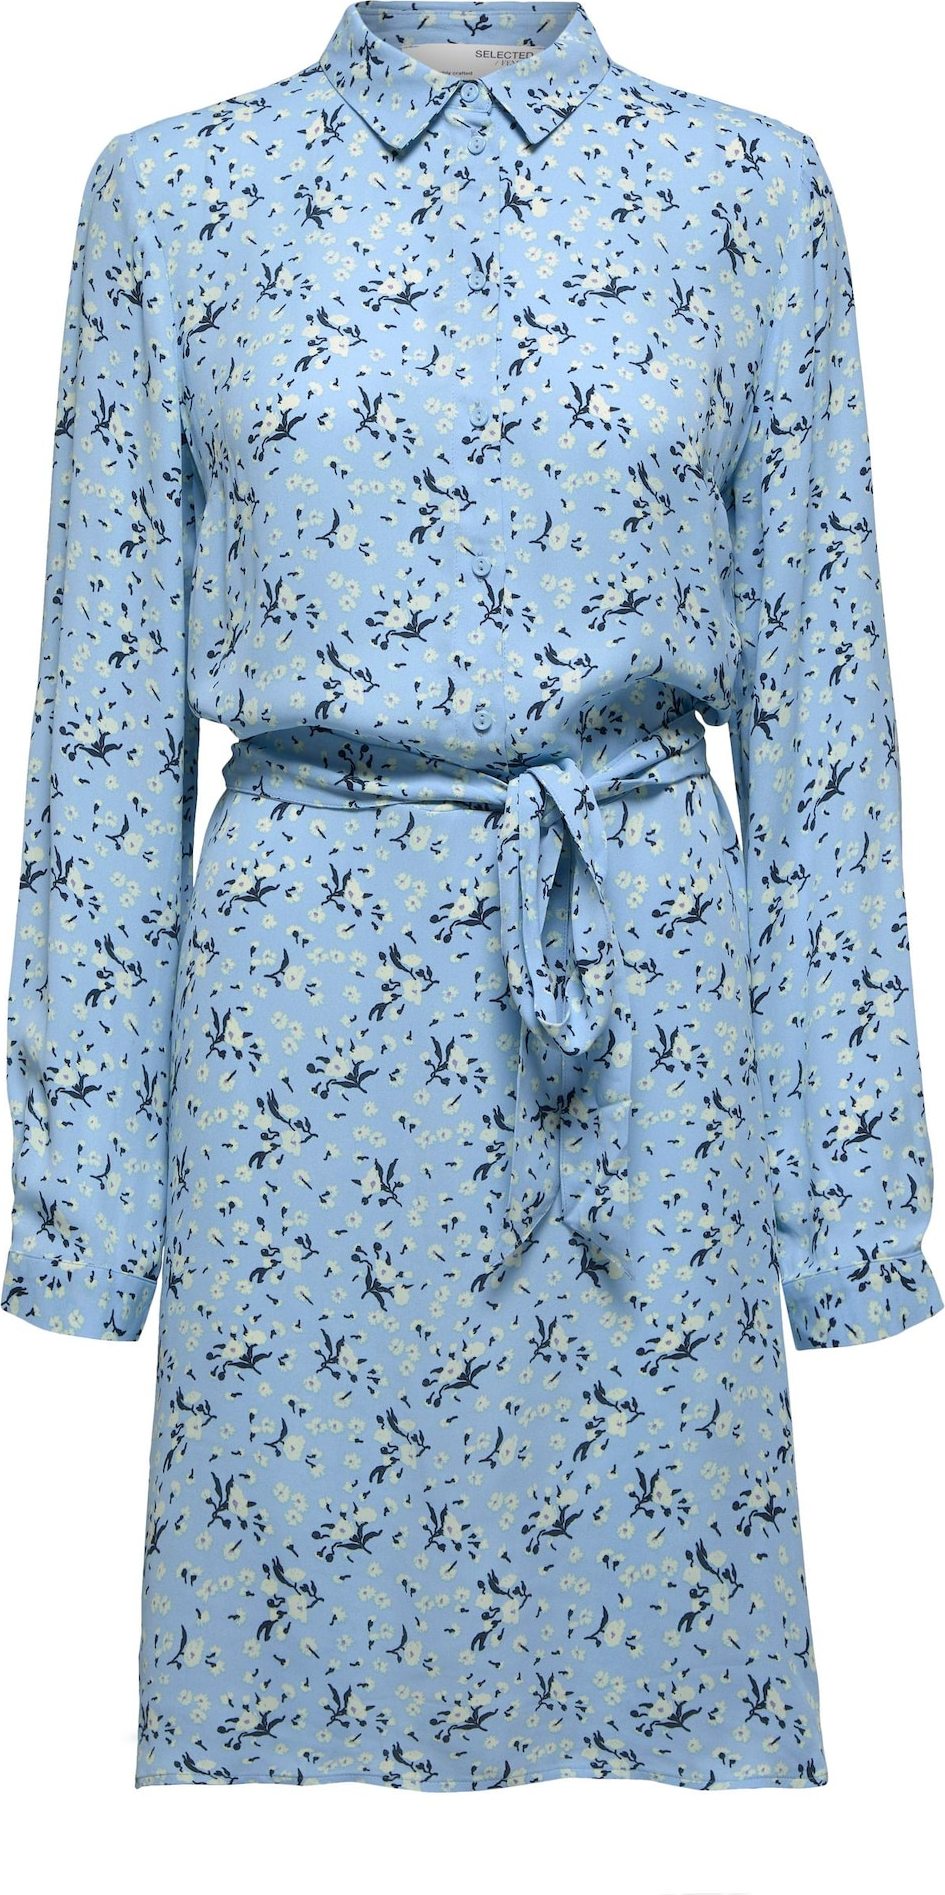 Selected Femme Petite Košilové šaty noční modrá / pastelová modrá / světlemodrá